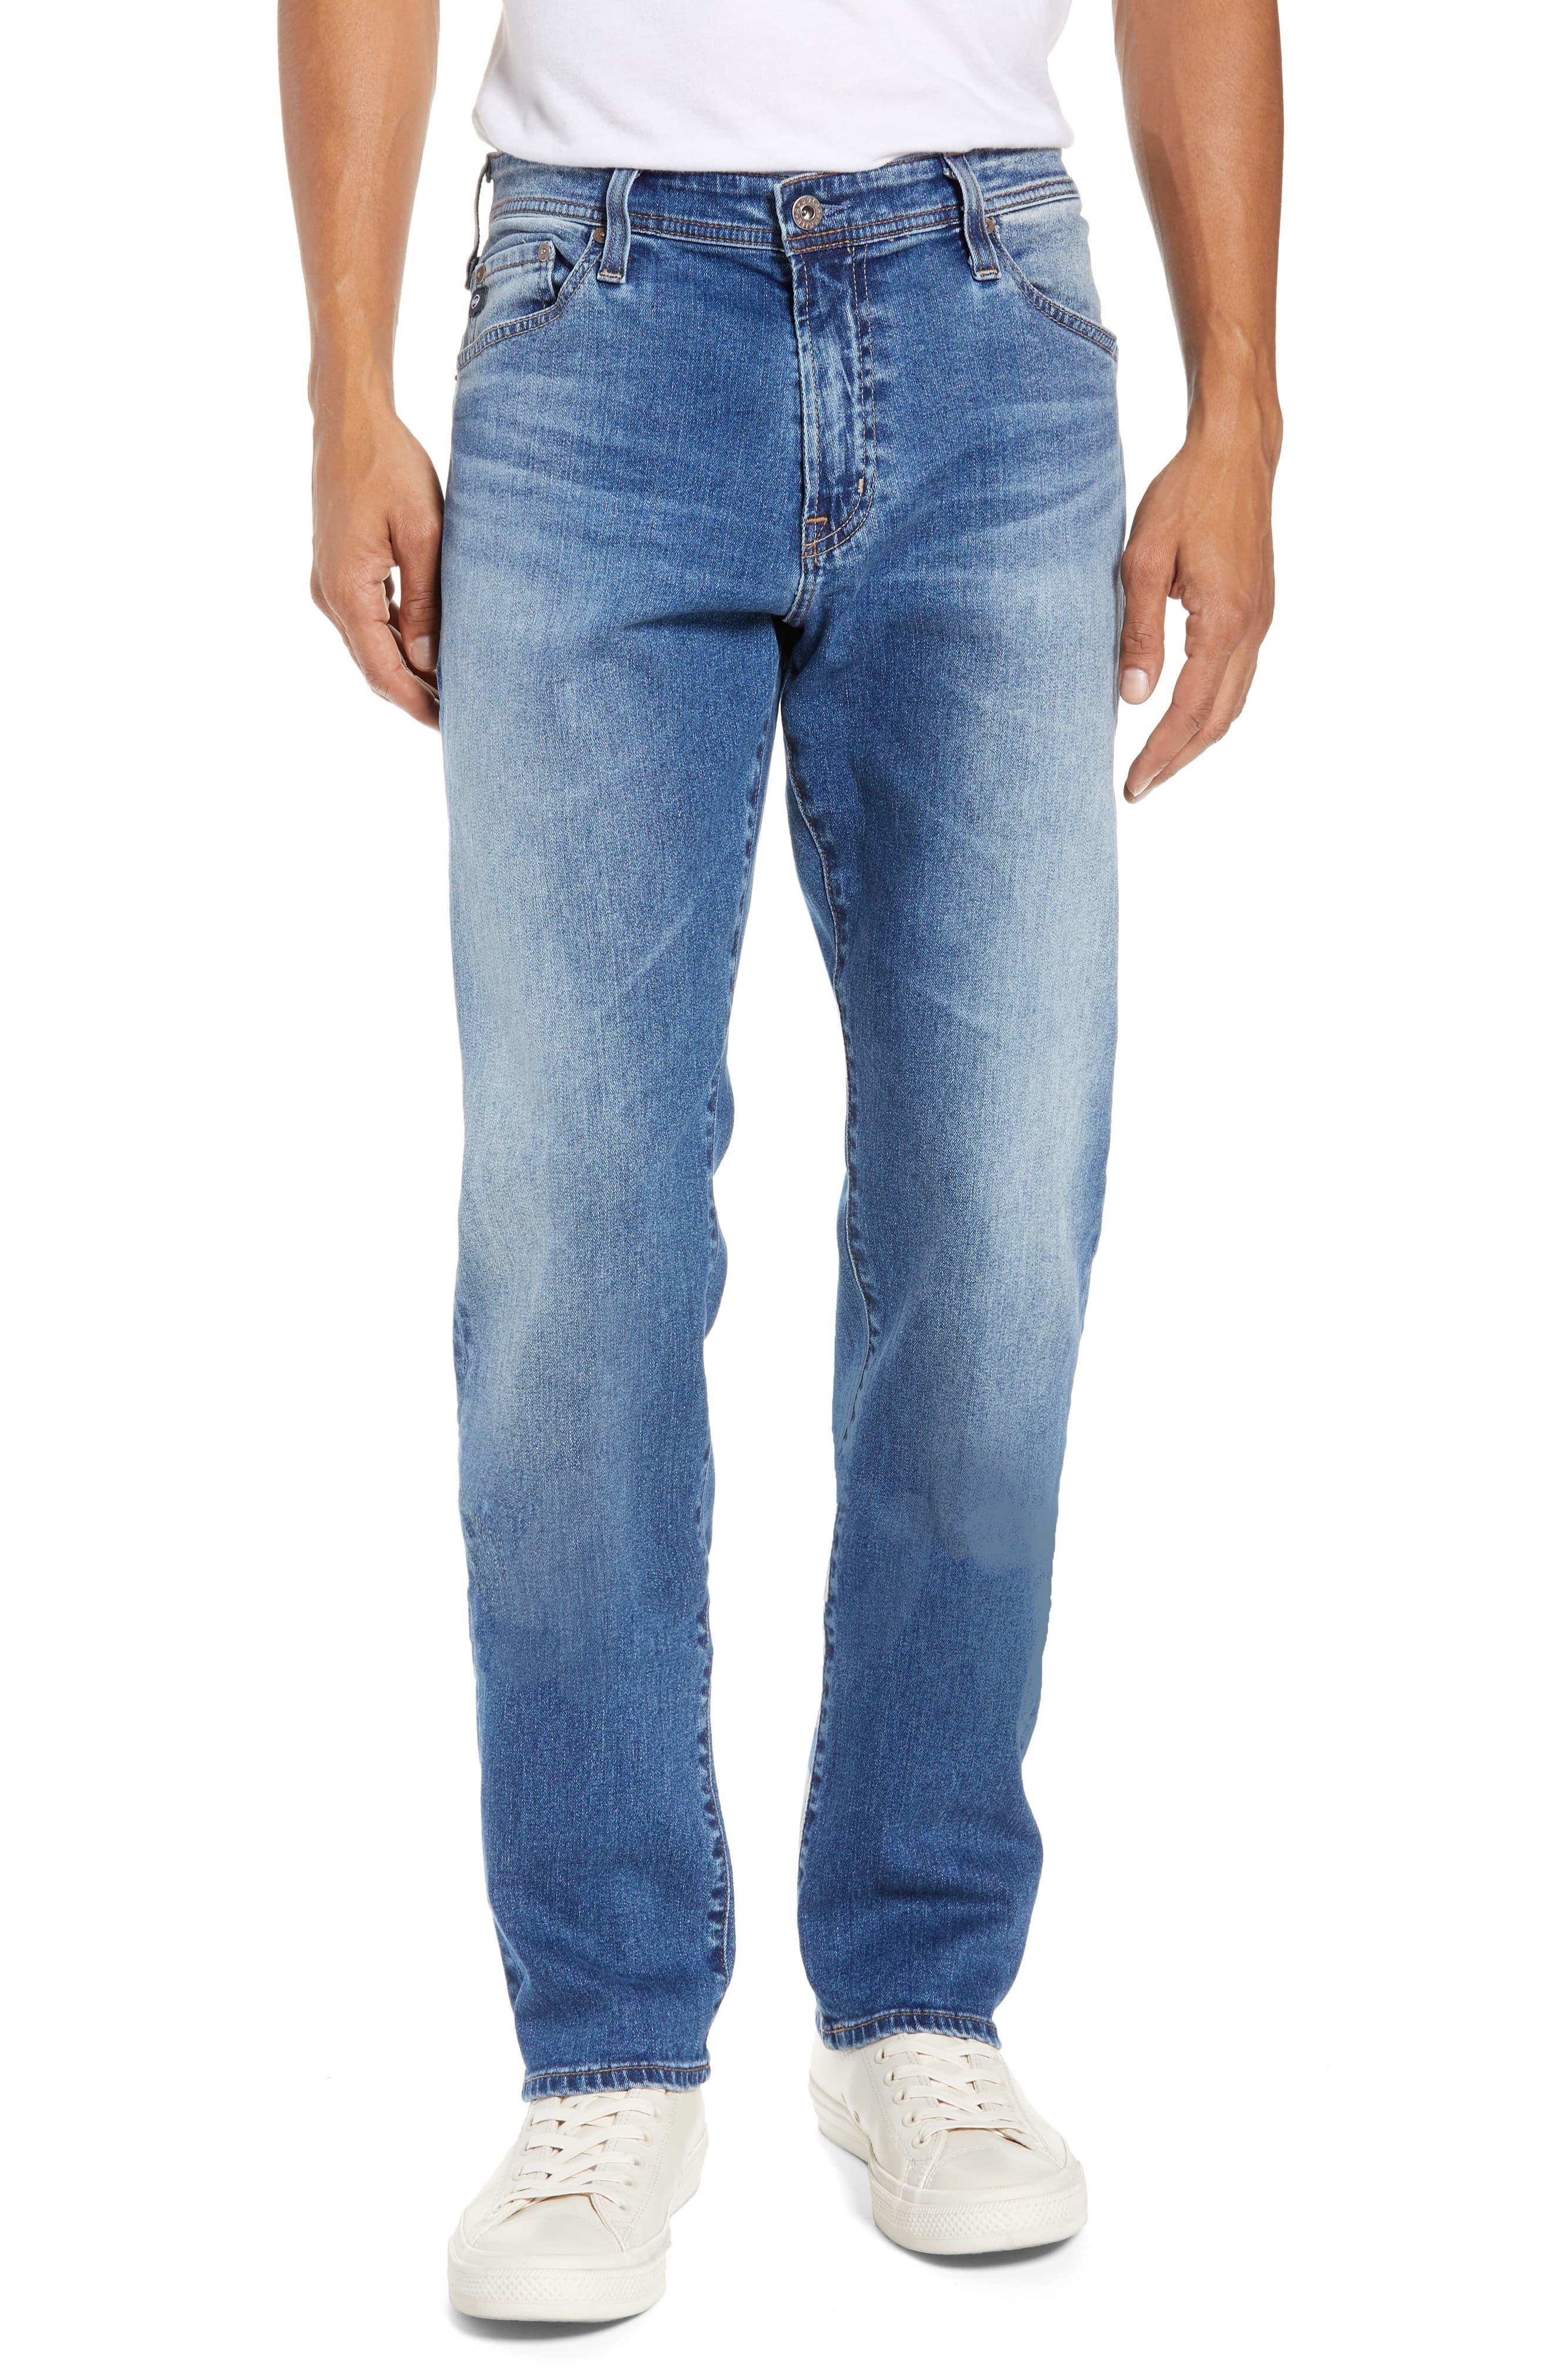 AG Jeans Everett Slim Straight Leg Jeans in Blue for Men - Lyst